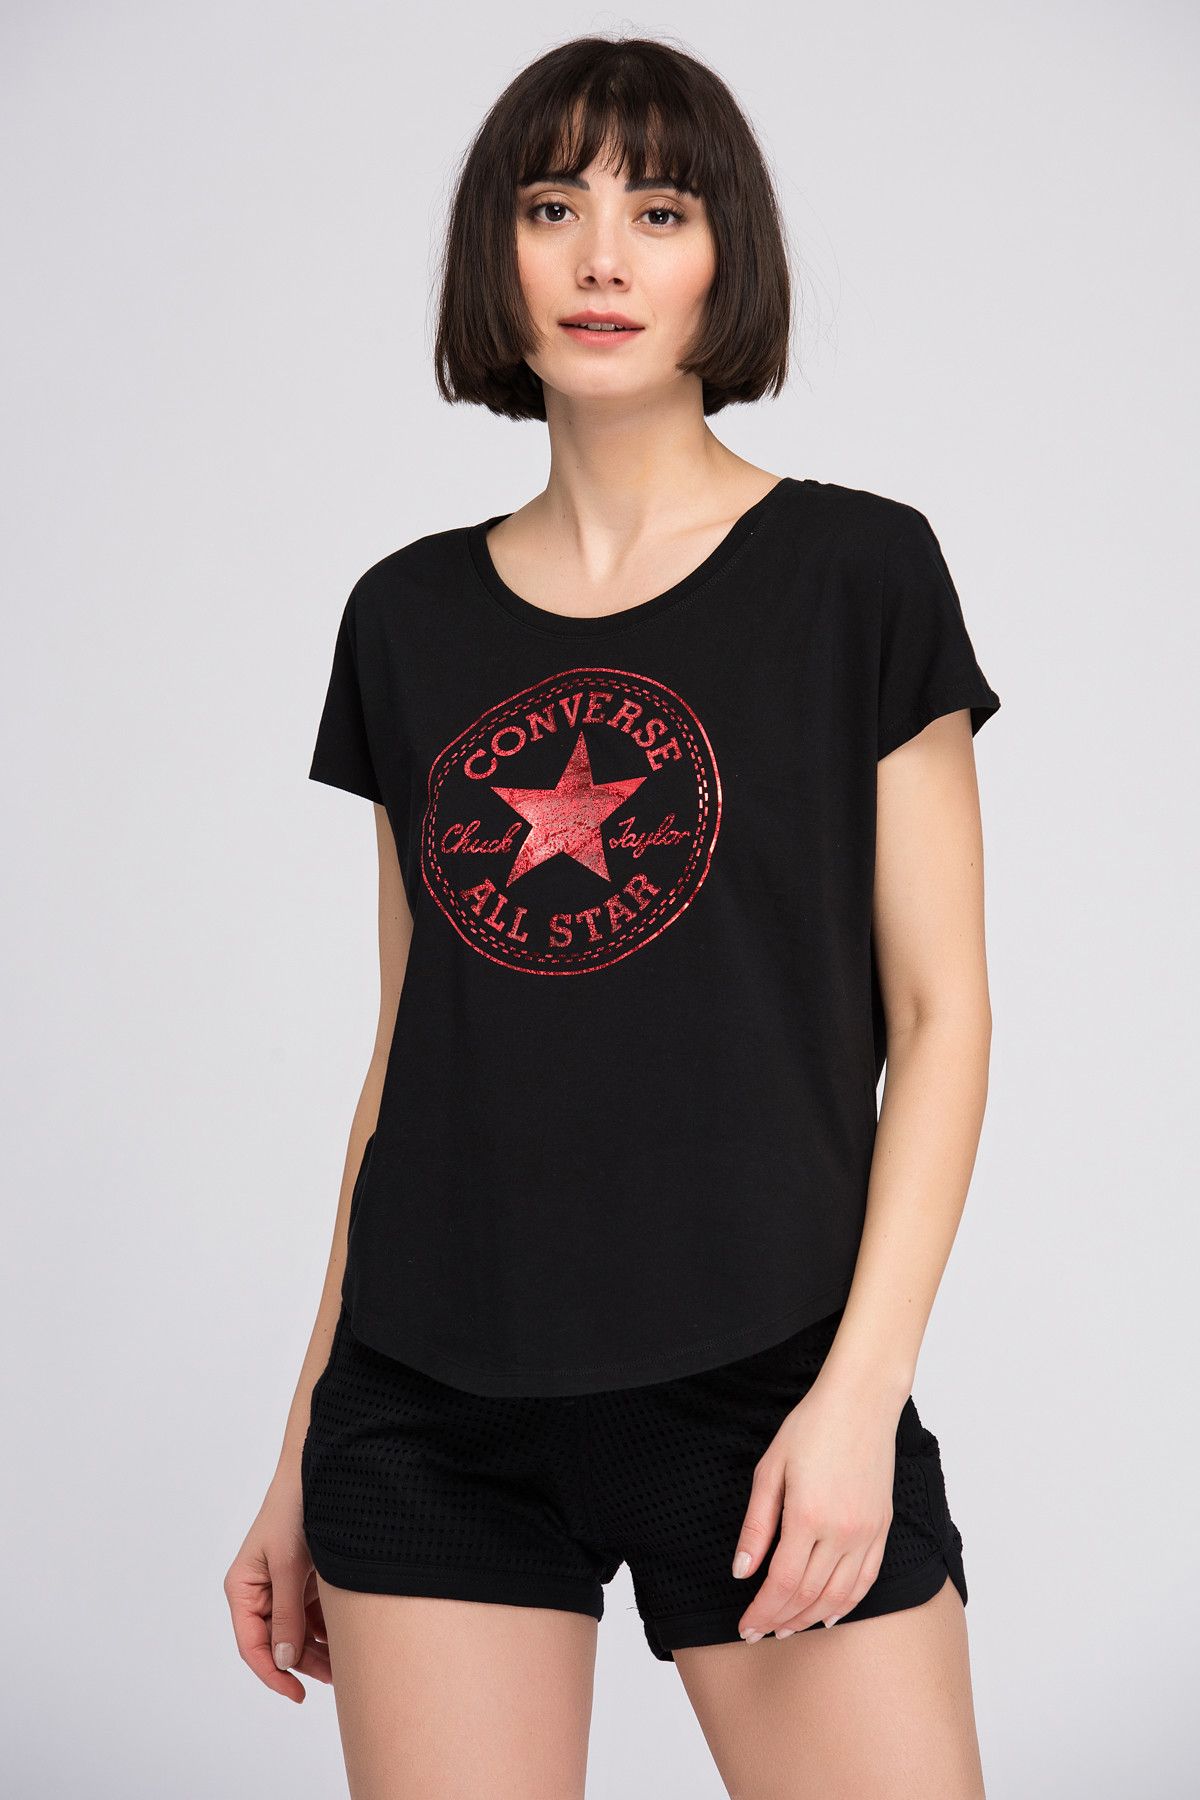 Converse Kadın Siyah T-shirt 14658C